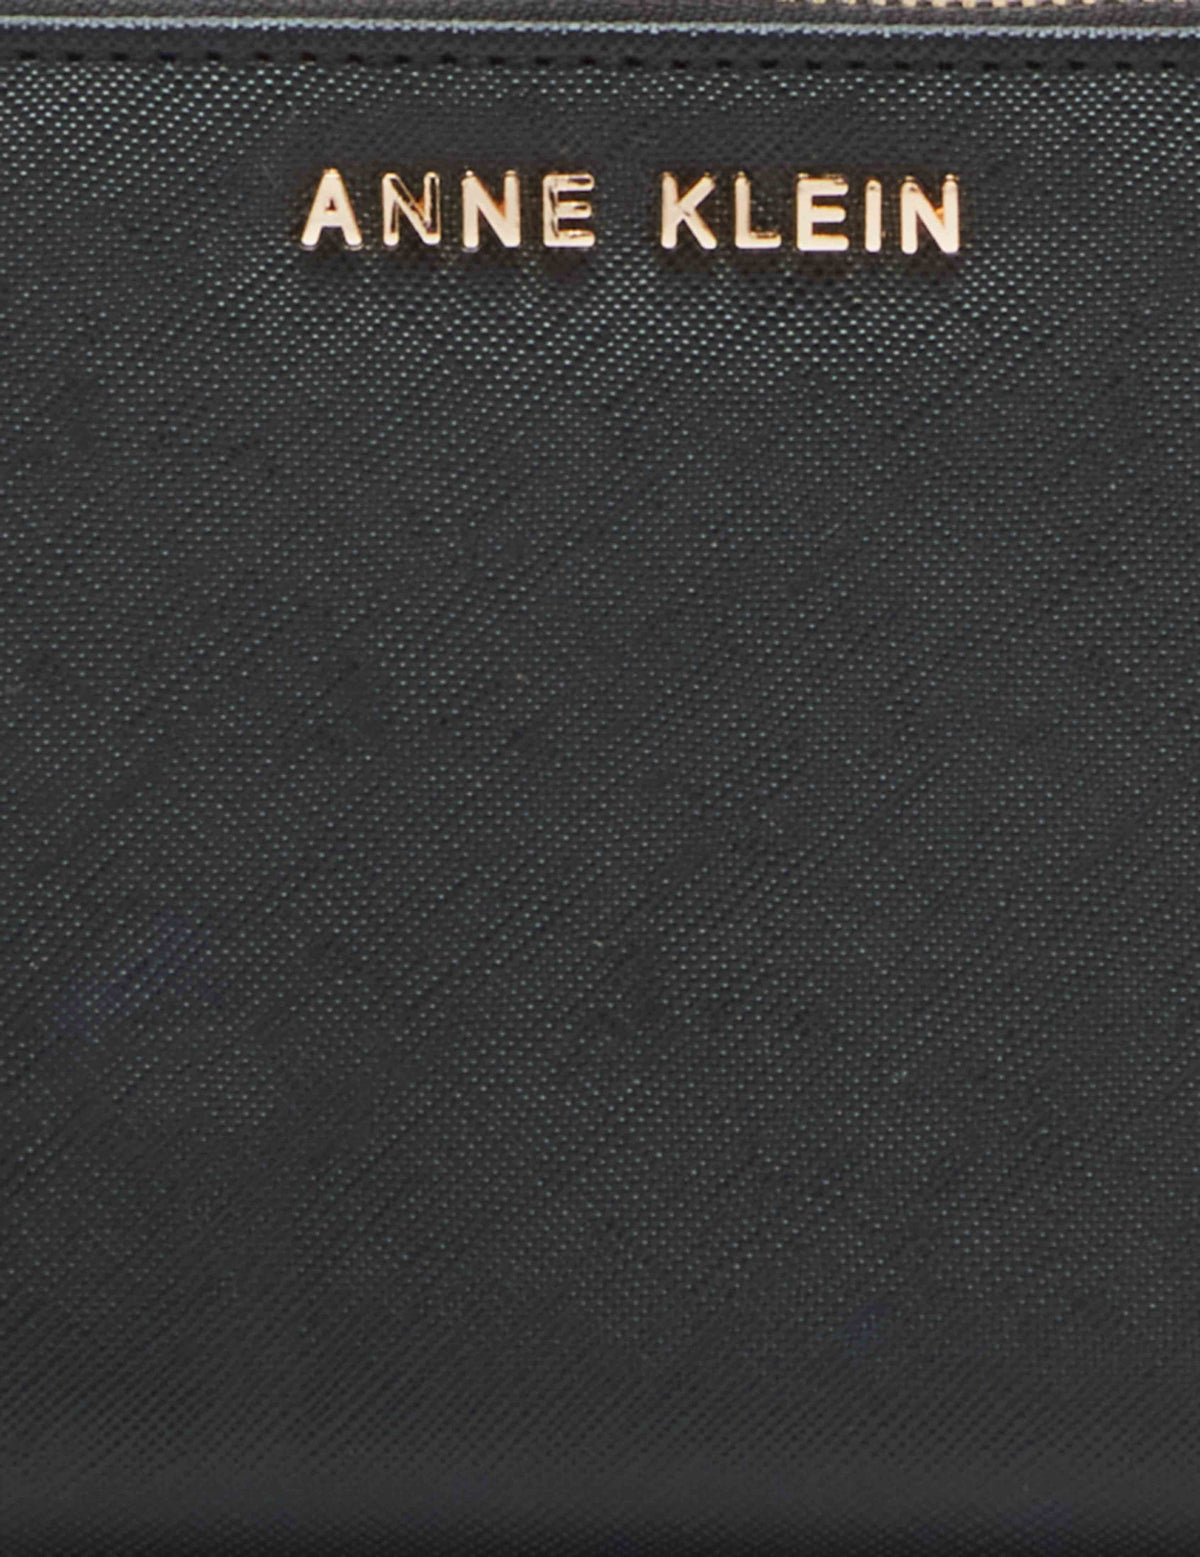 Anne Klein  AK Wristlet With Charm Key Ring